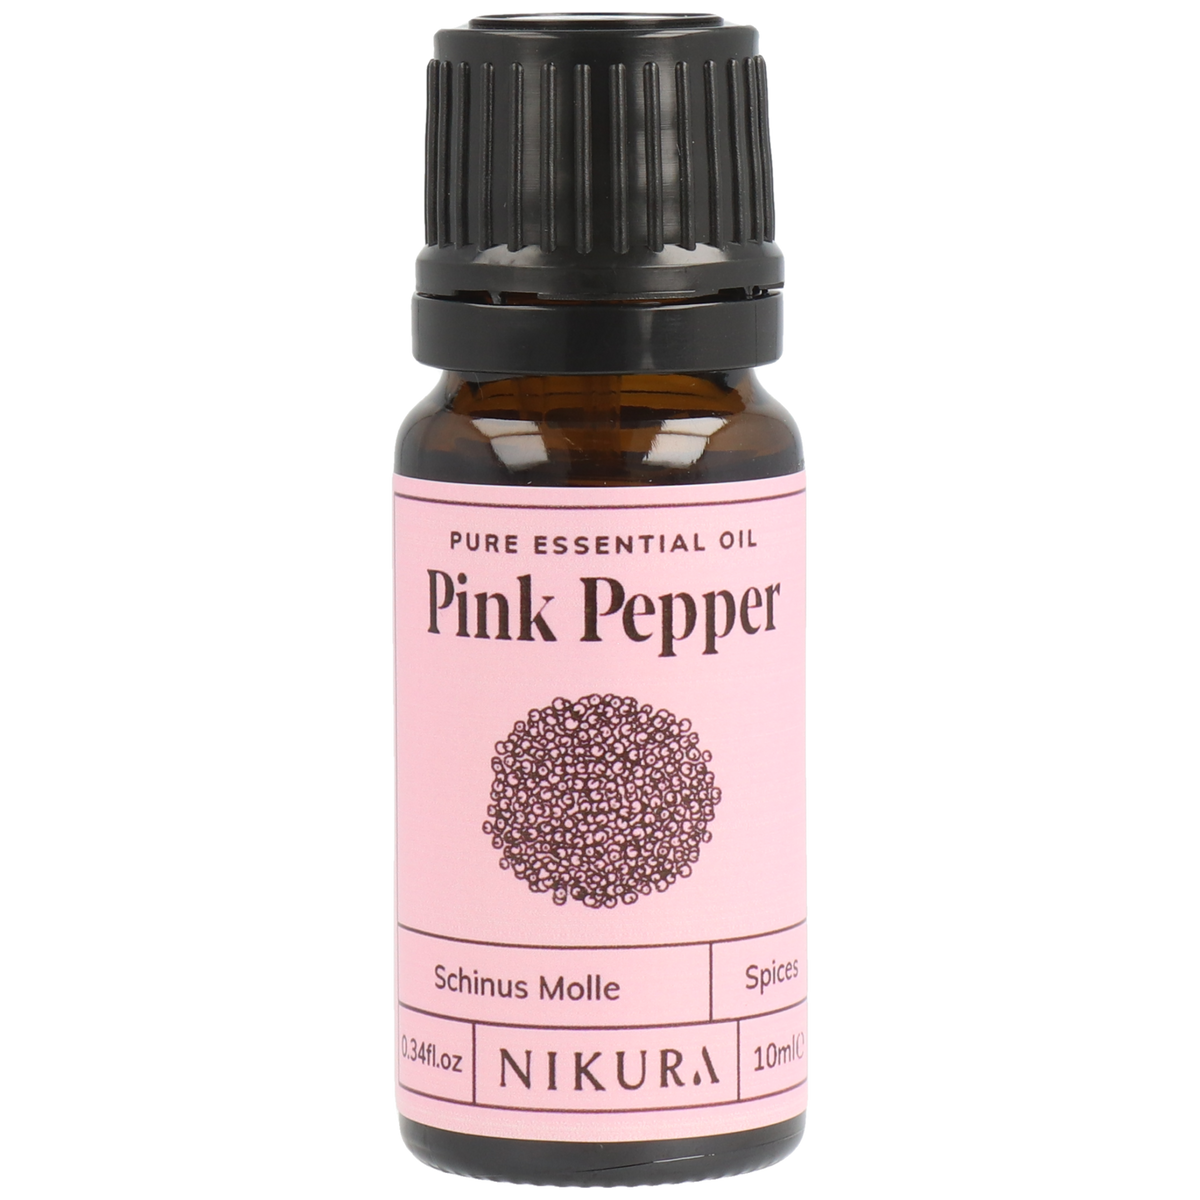 Pink pepper essential oil, 0.34 fl oz (10 ml)